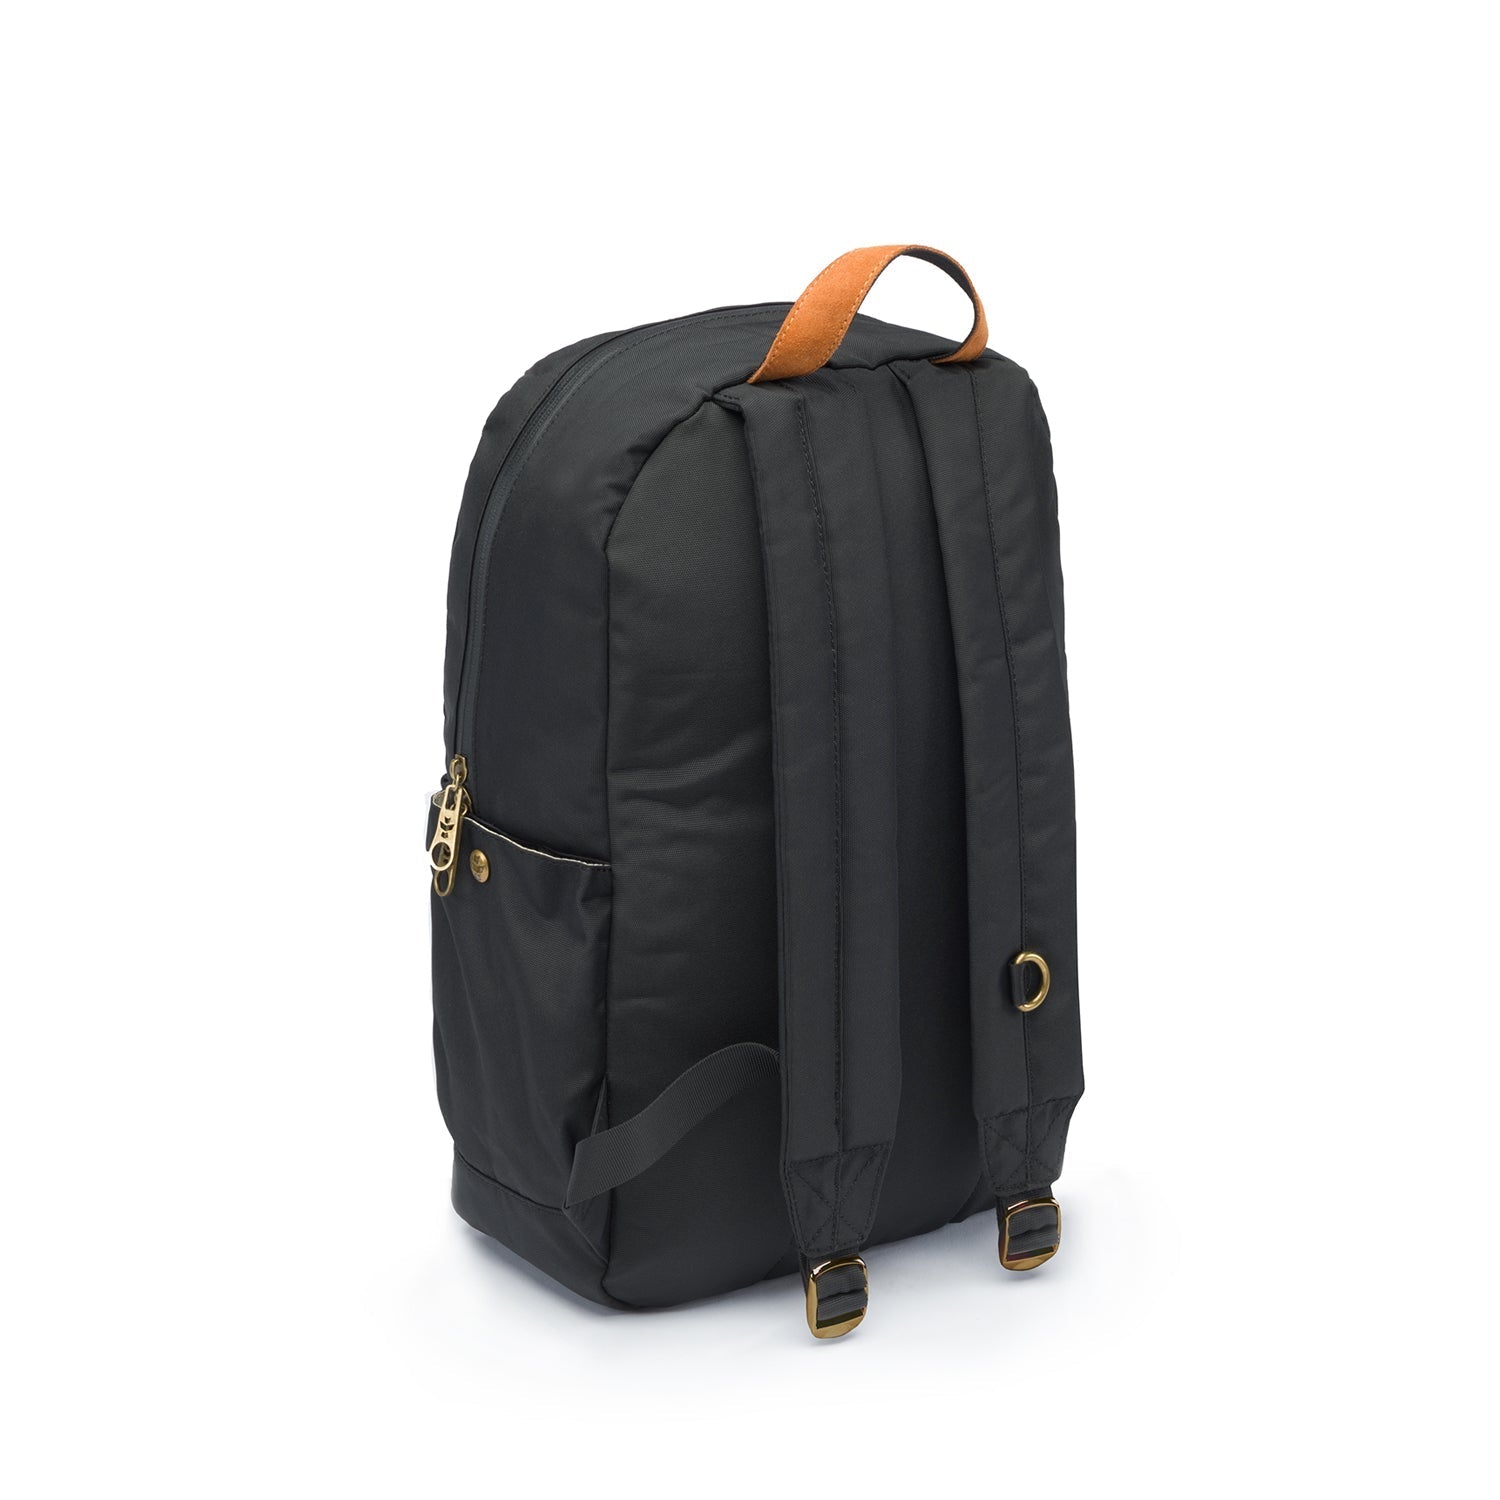 Revelry Explorer - Smell Proof Backpack